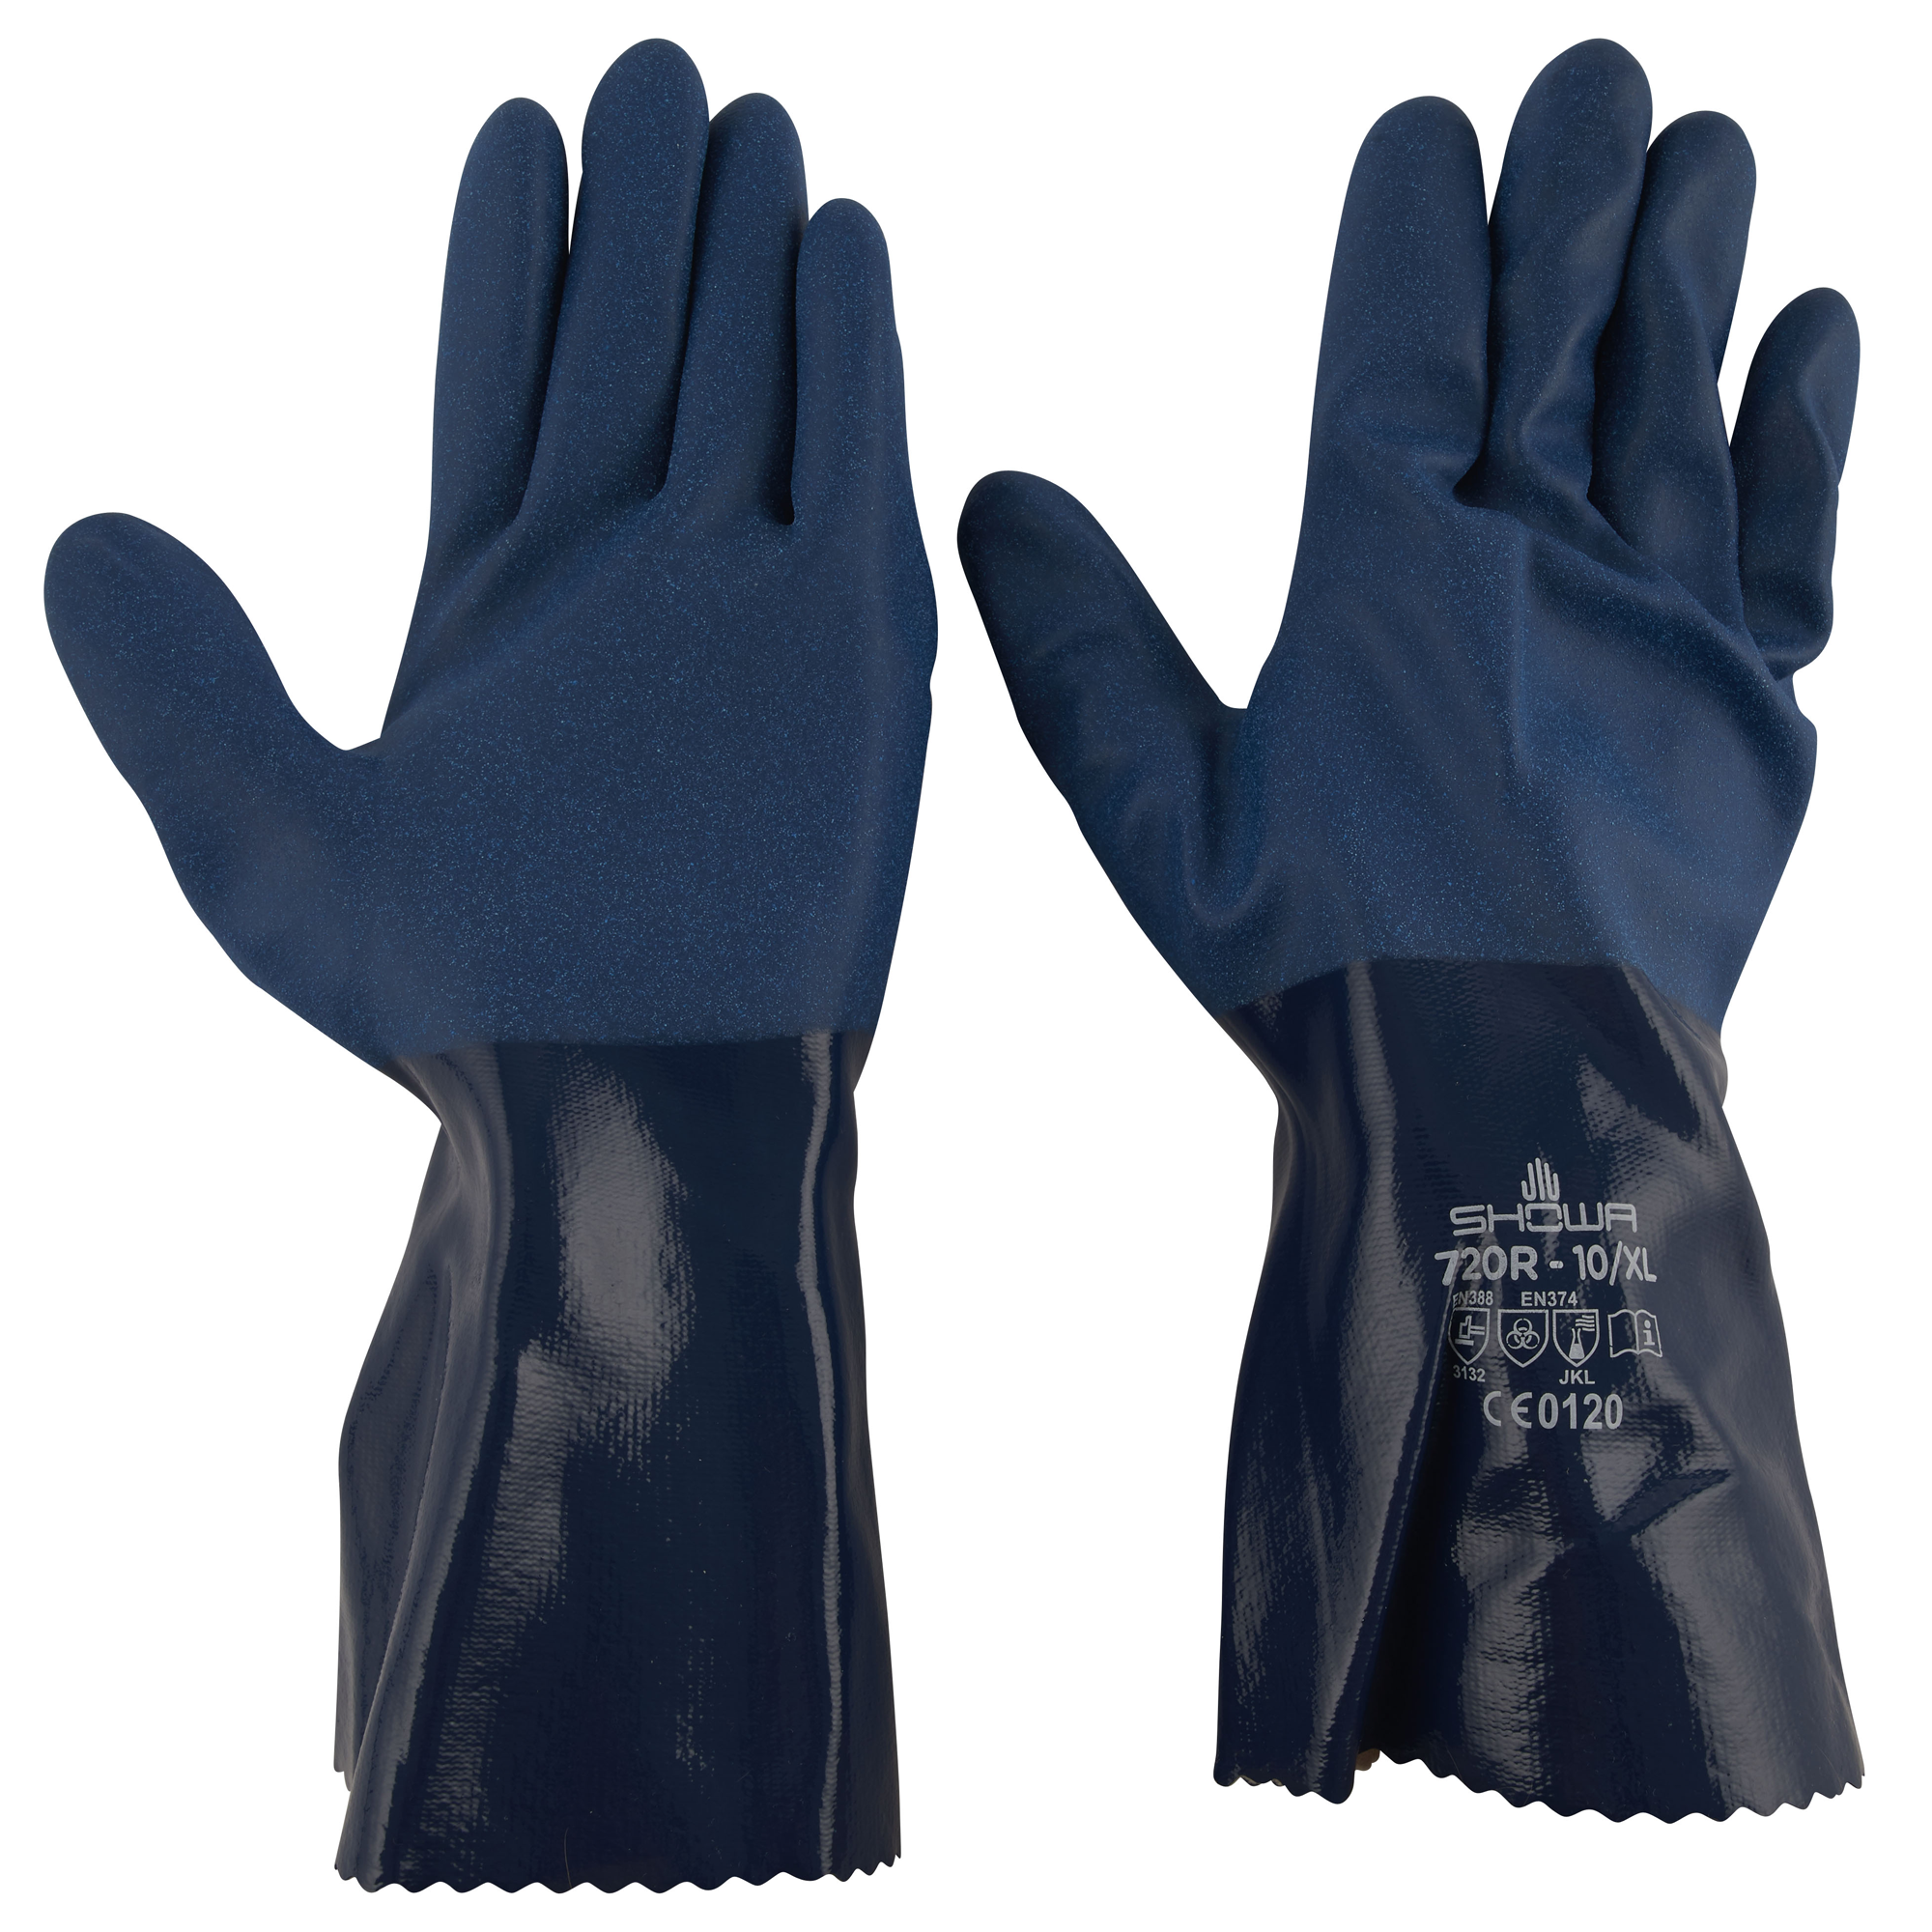 Chemikalienschutz Handschuhe Größe 10/XL + product picture